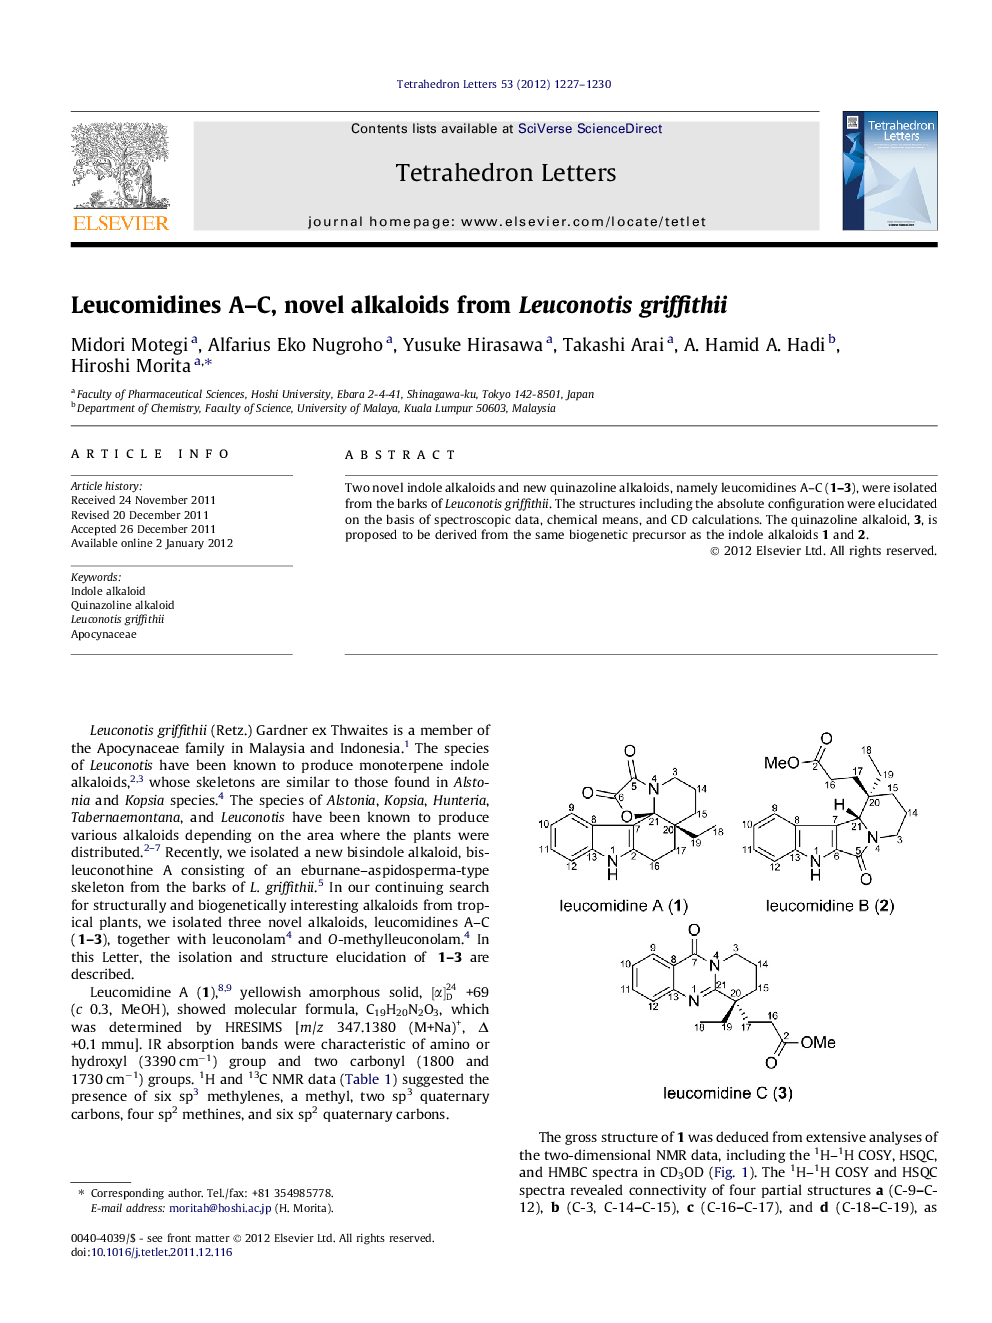 Leucomidines A-C, novel alkaloids from Leuconotis griffithii